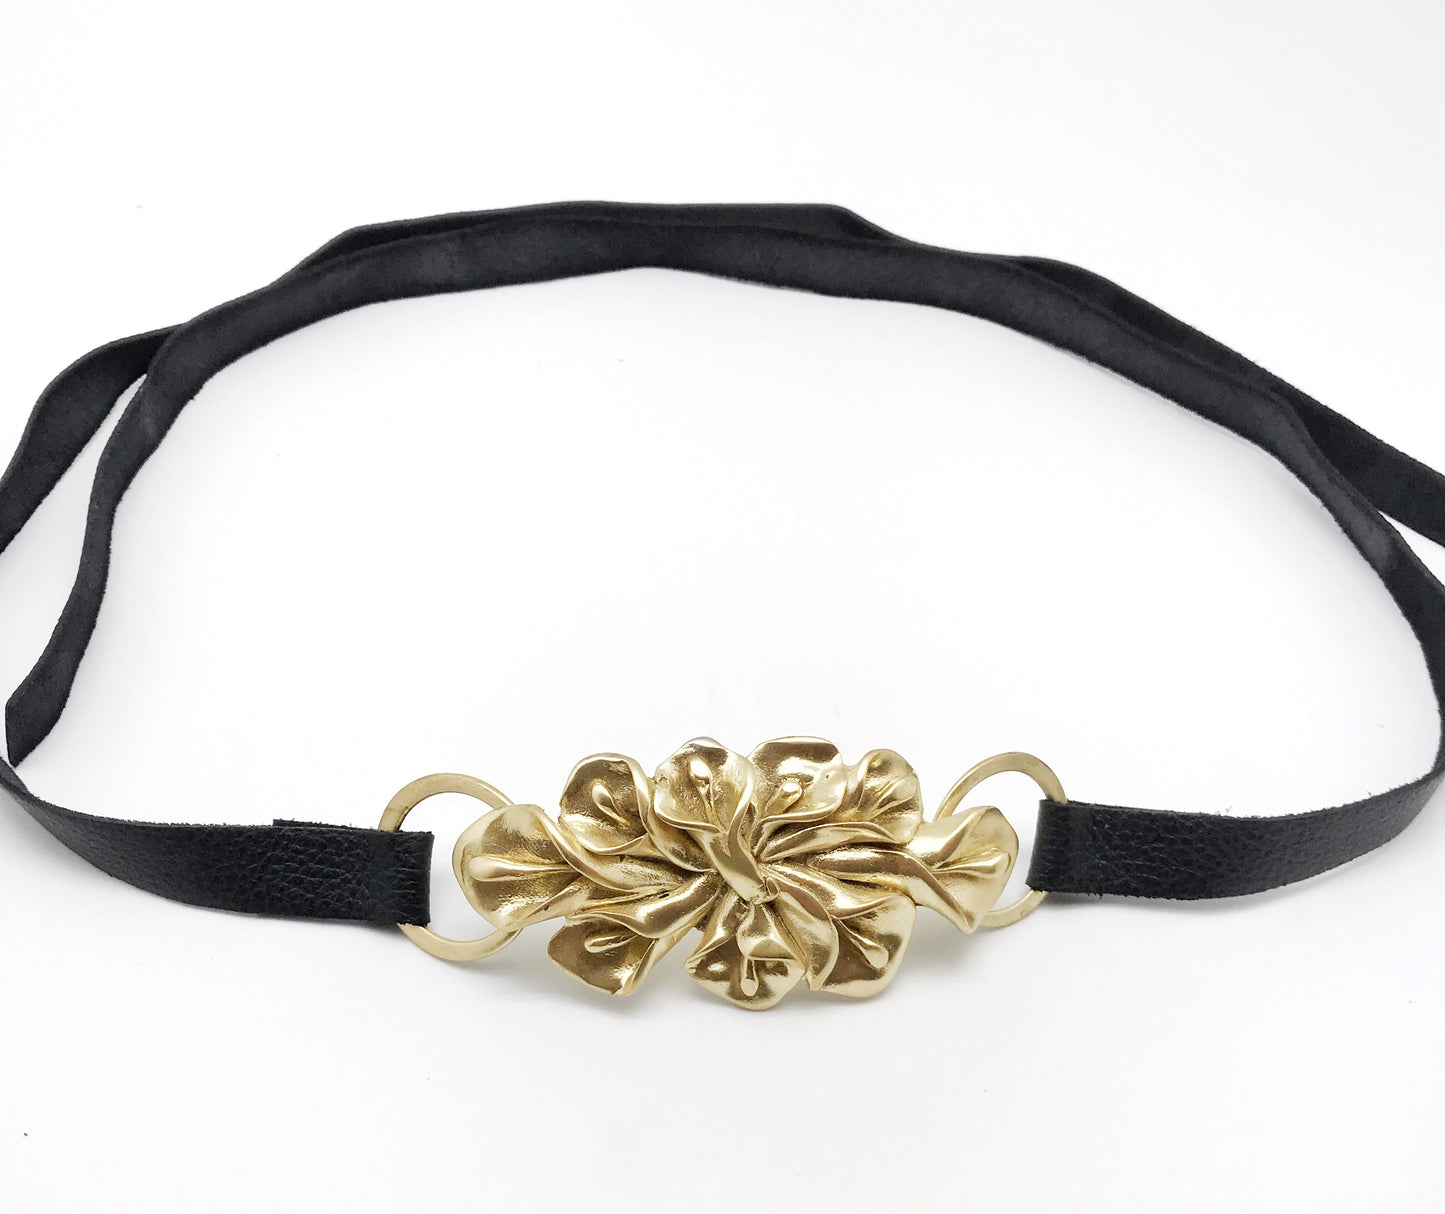 Adjustable gold-plated black leather belt "calas"